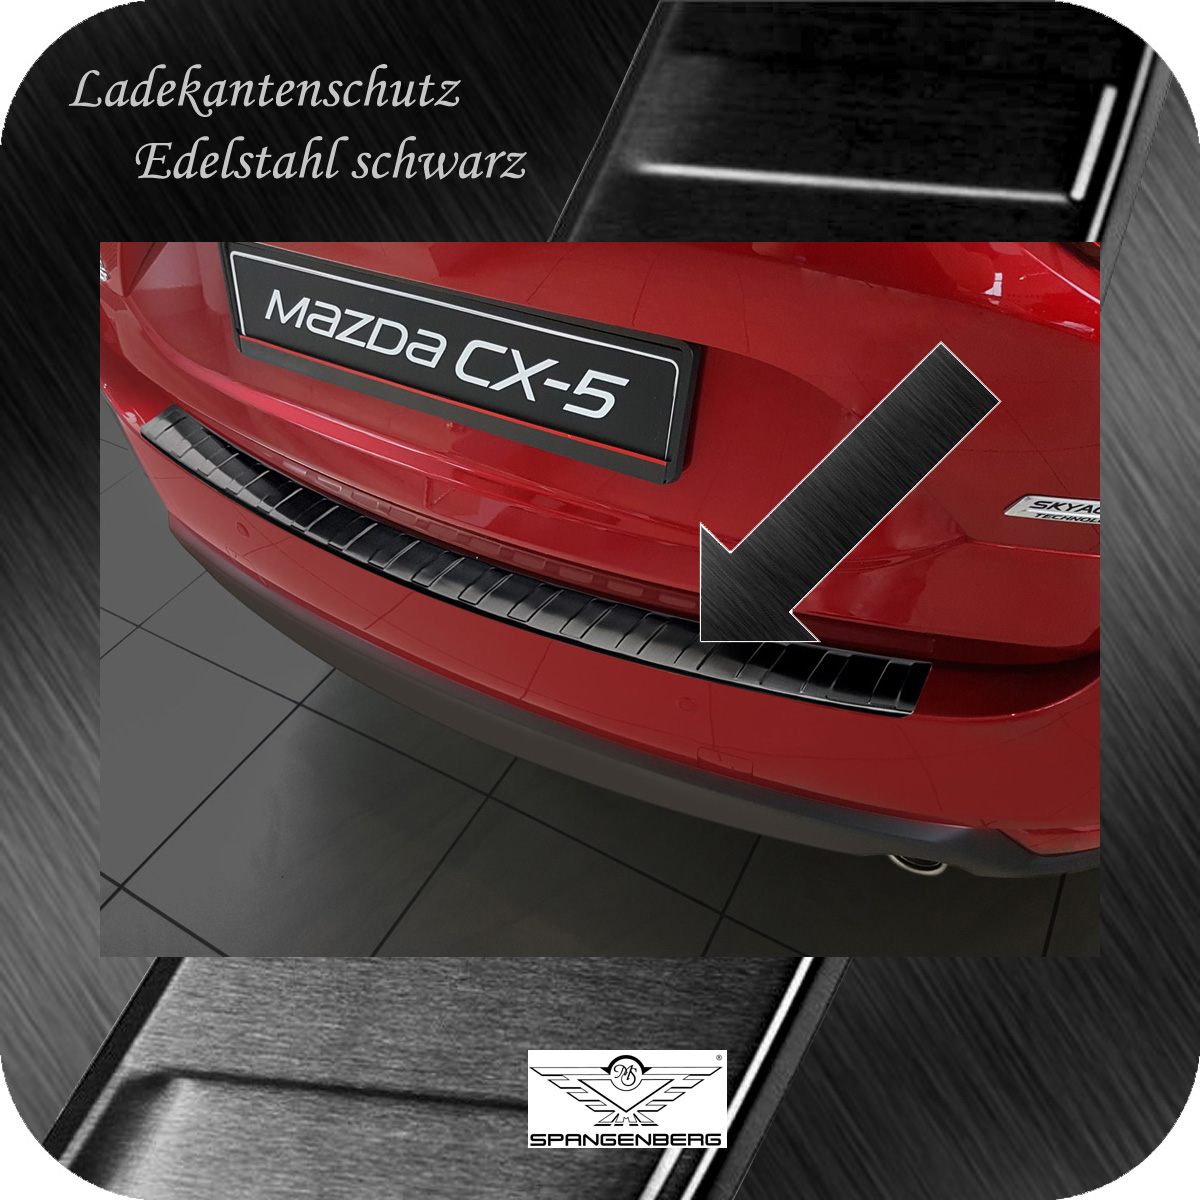 Ladekantenschutz Edelstahl schwarz Mazda CX-5 II ab Baujahr 05.2017- 3245108